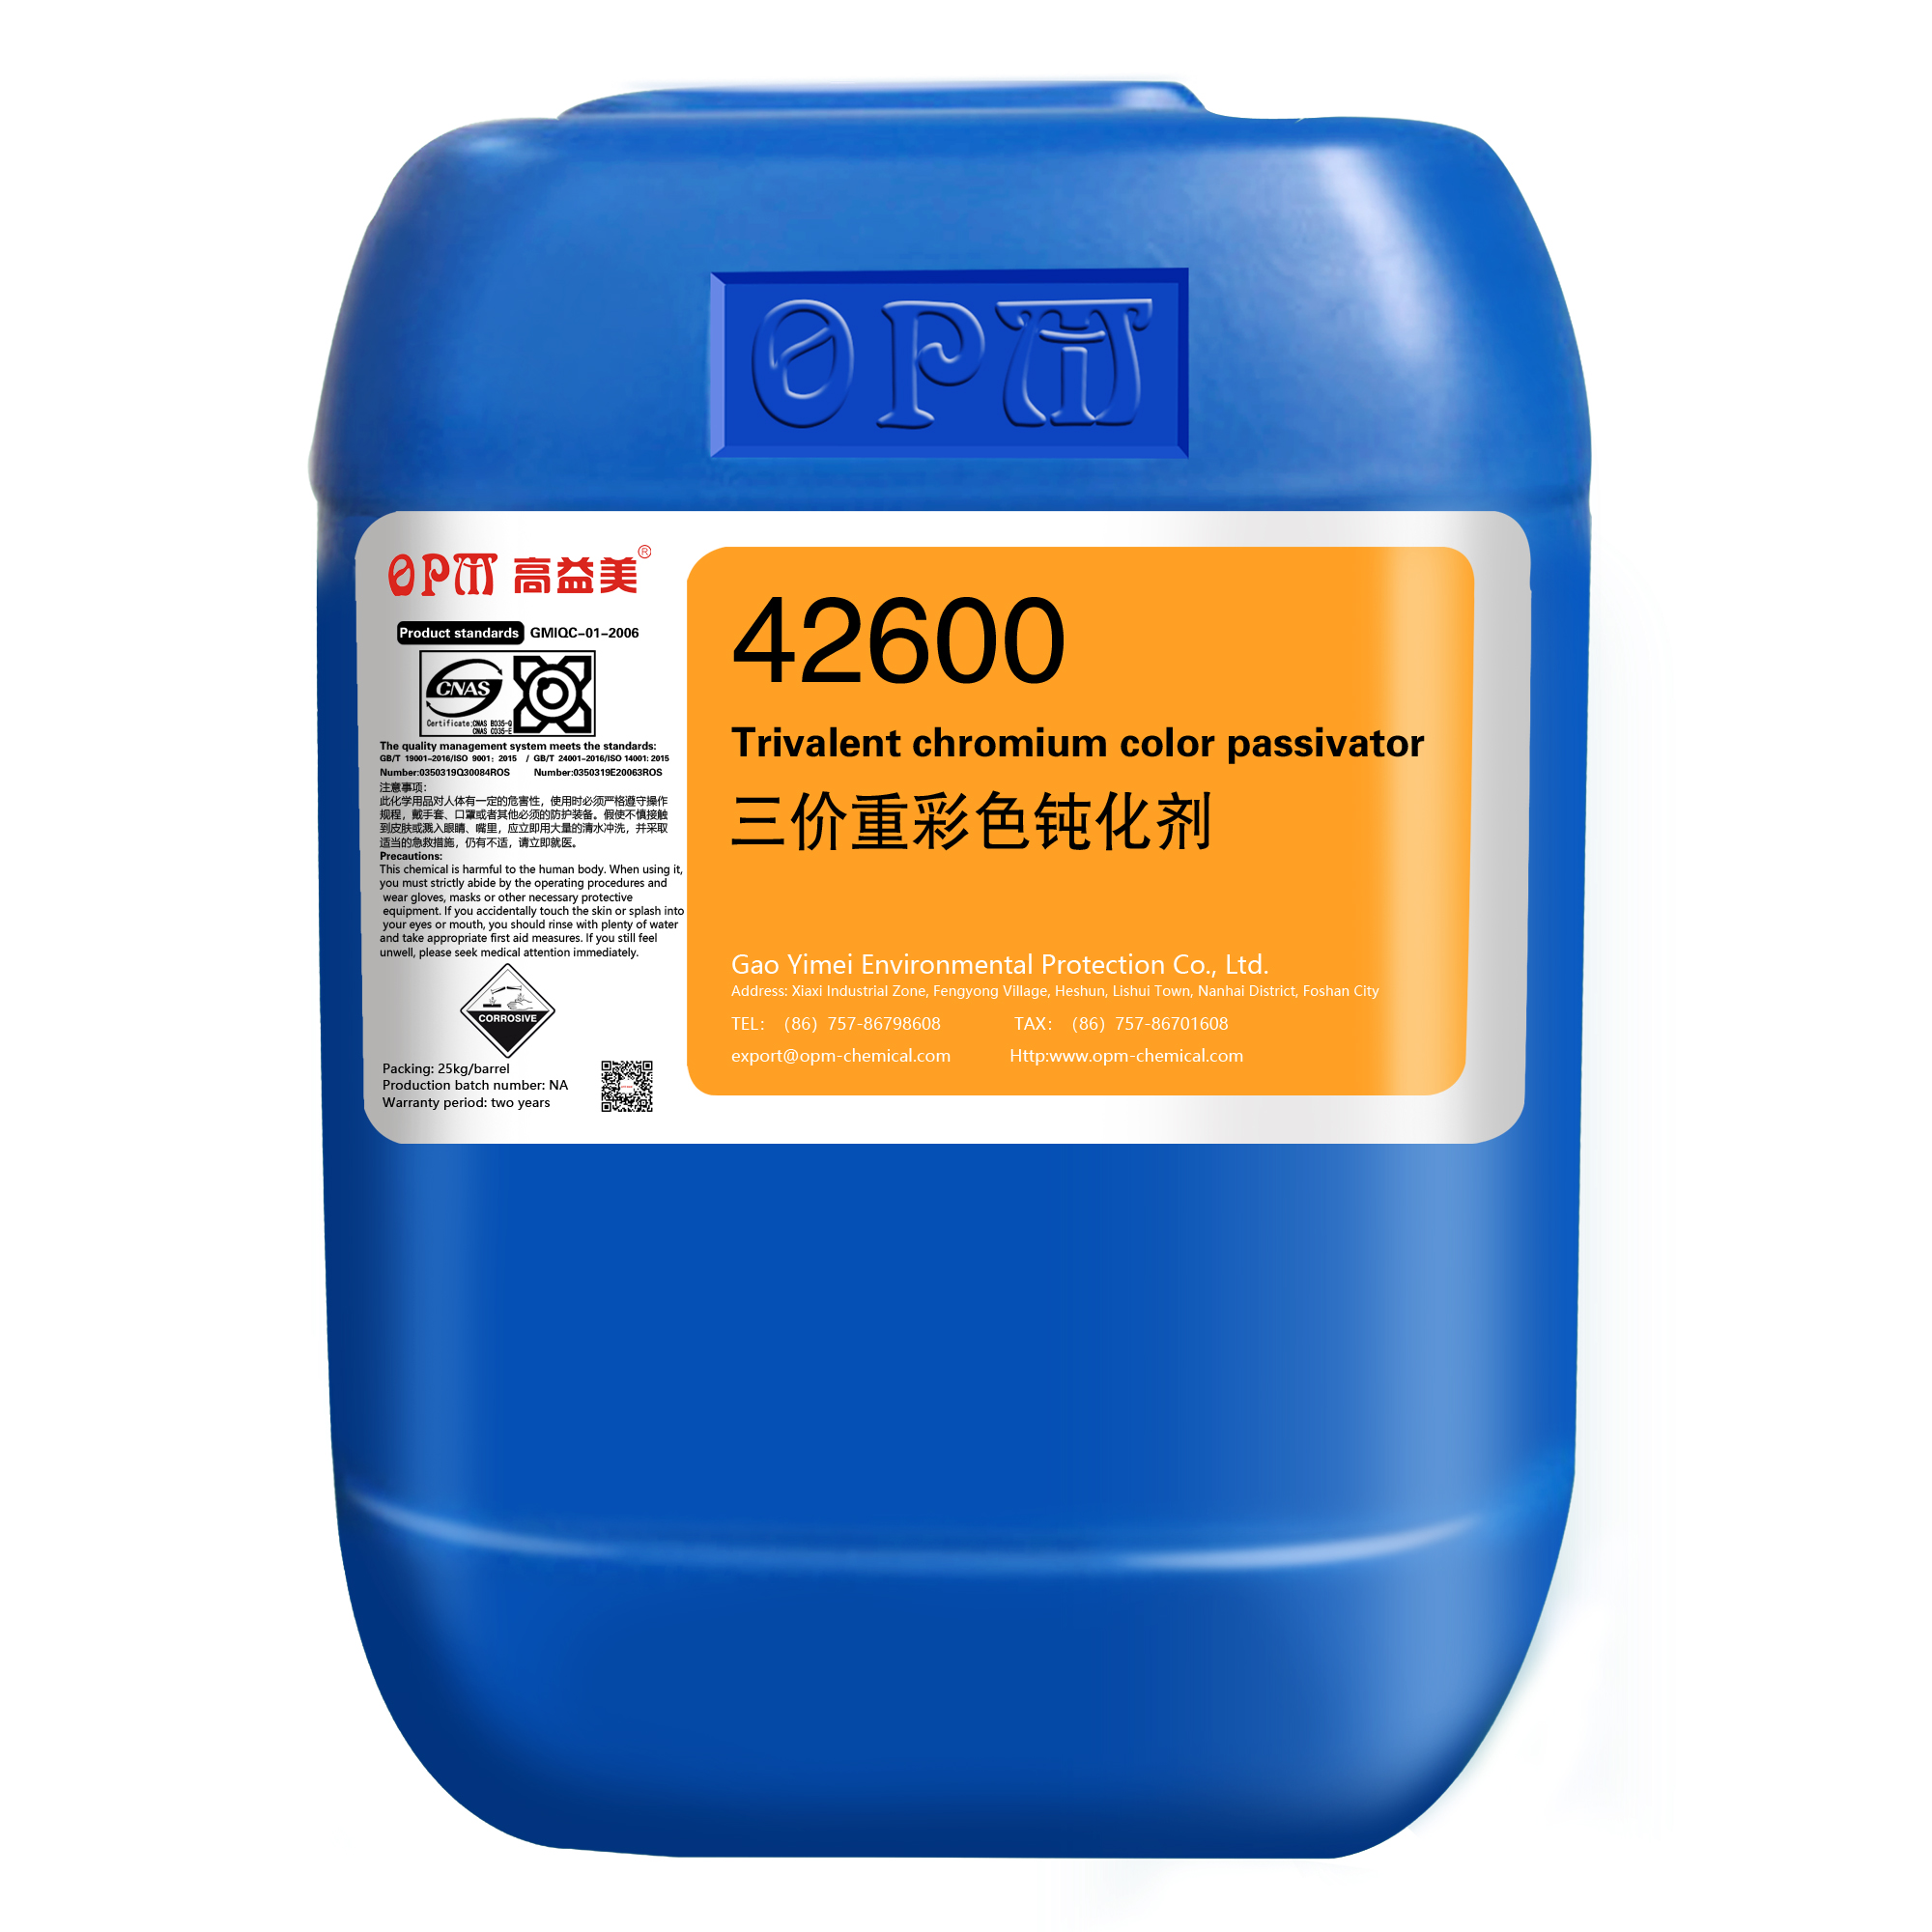 42600Trivalent chromium color passivator